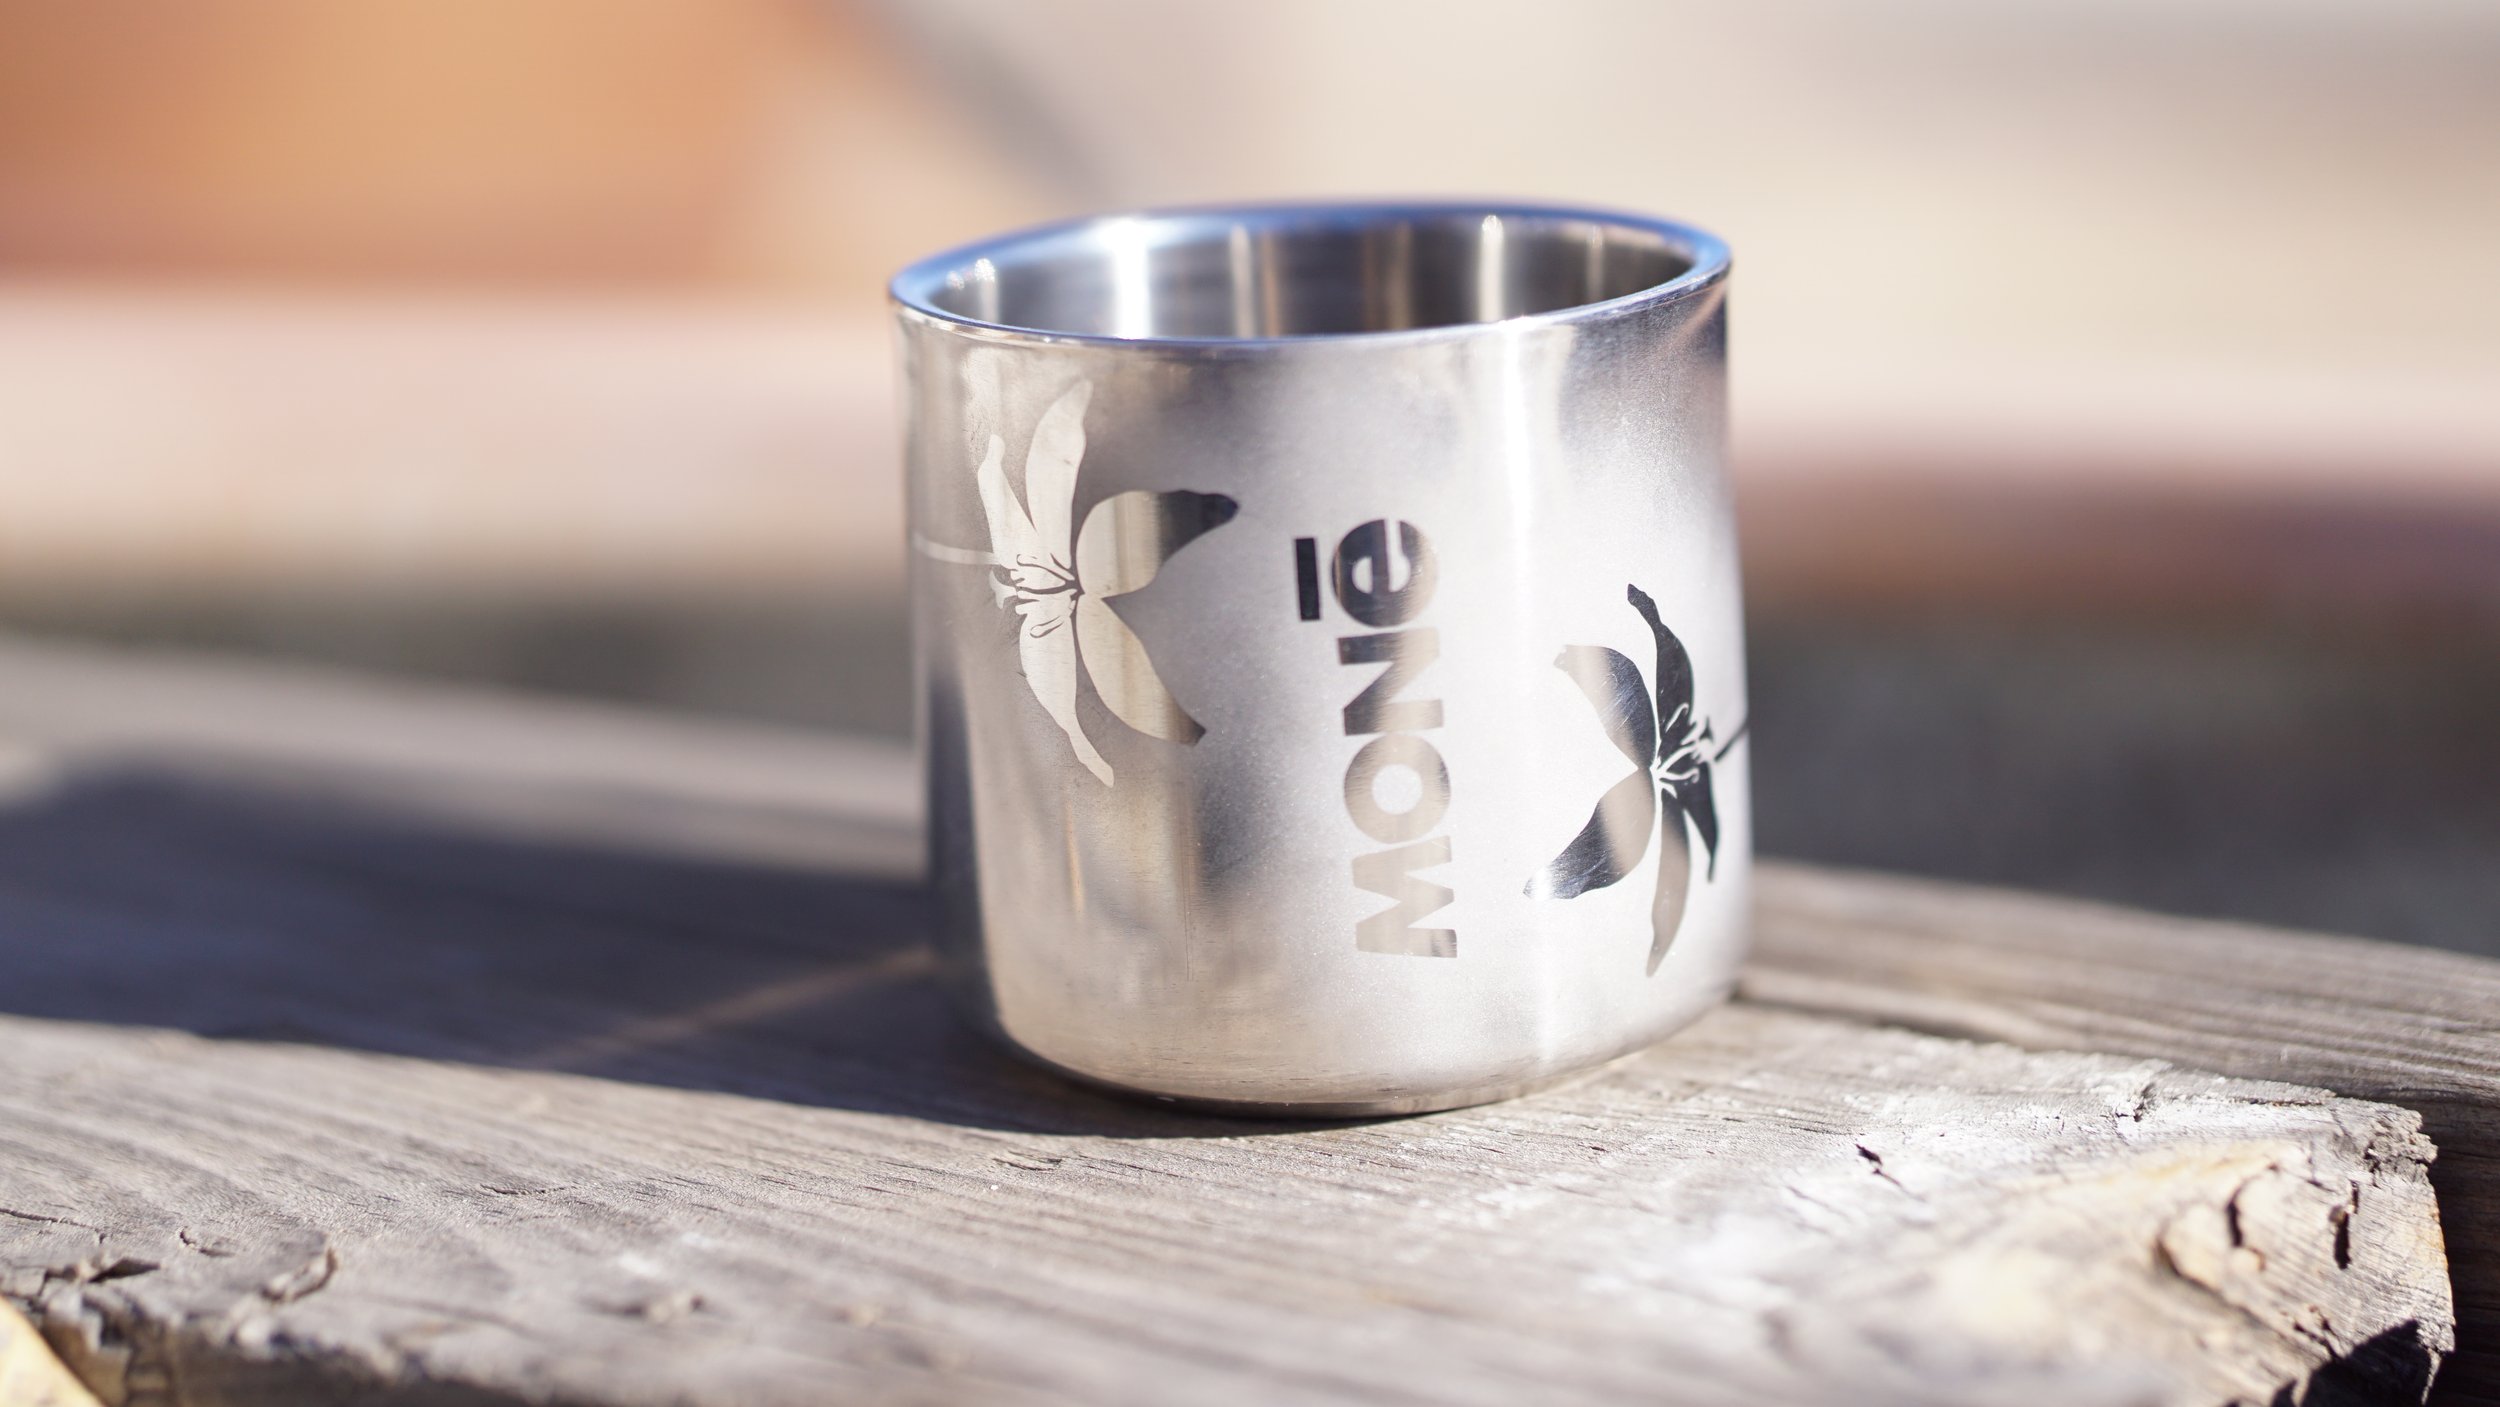 Monē stainless steel mugs for danglin — MONē